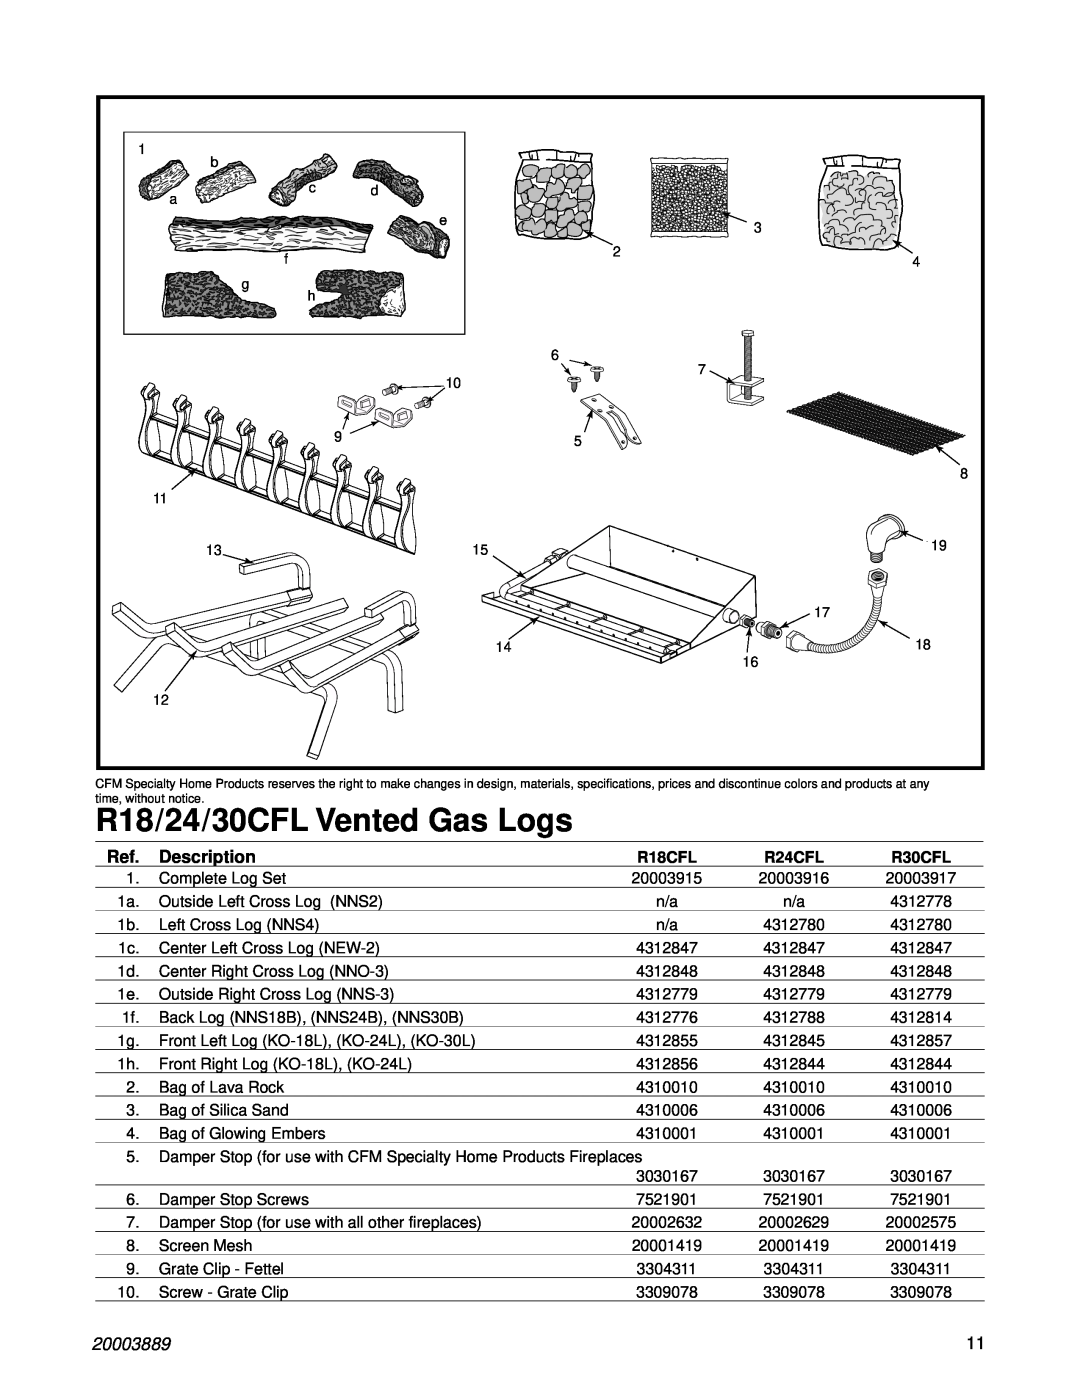 Vermont Casting R18CFL manual R18/24/30CFL Vented Gas Logs, Description, 20003889, R24CFL, R30CFL 